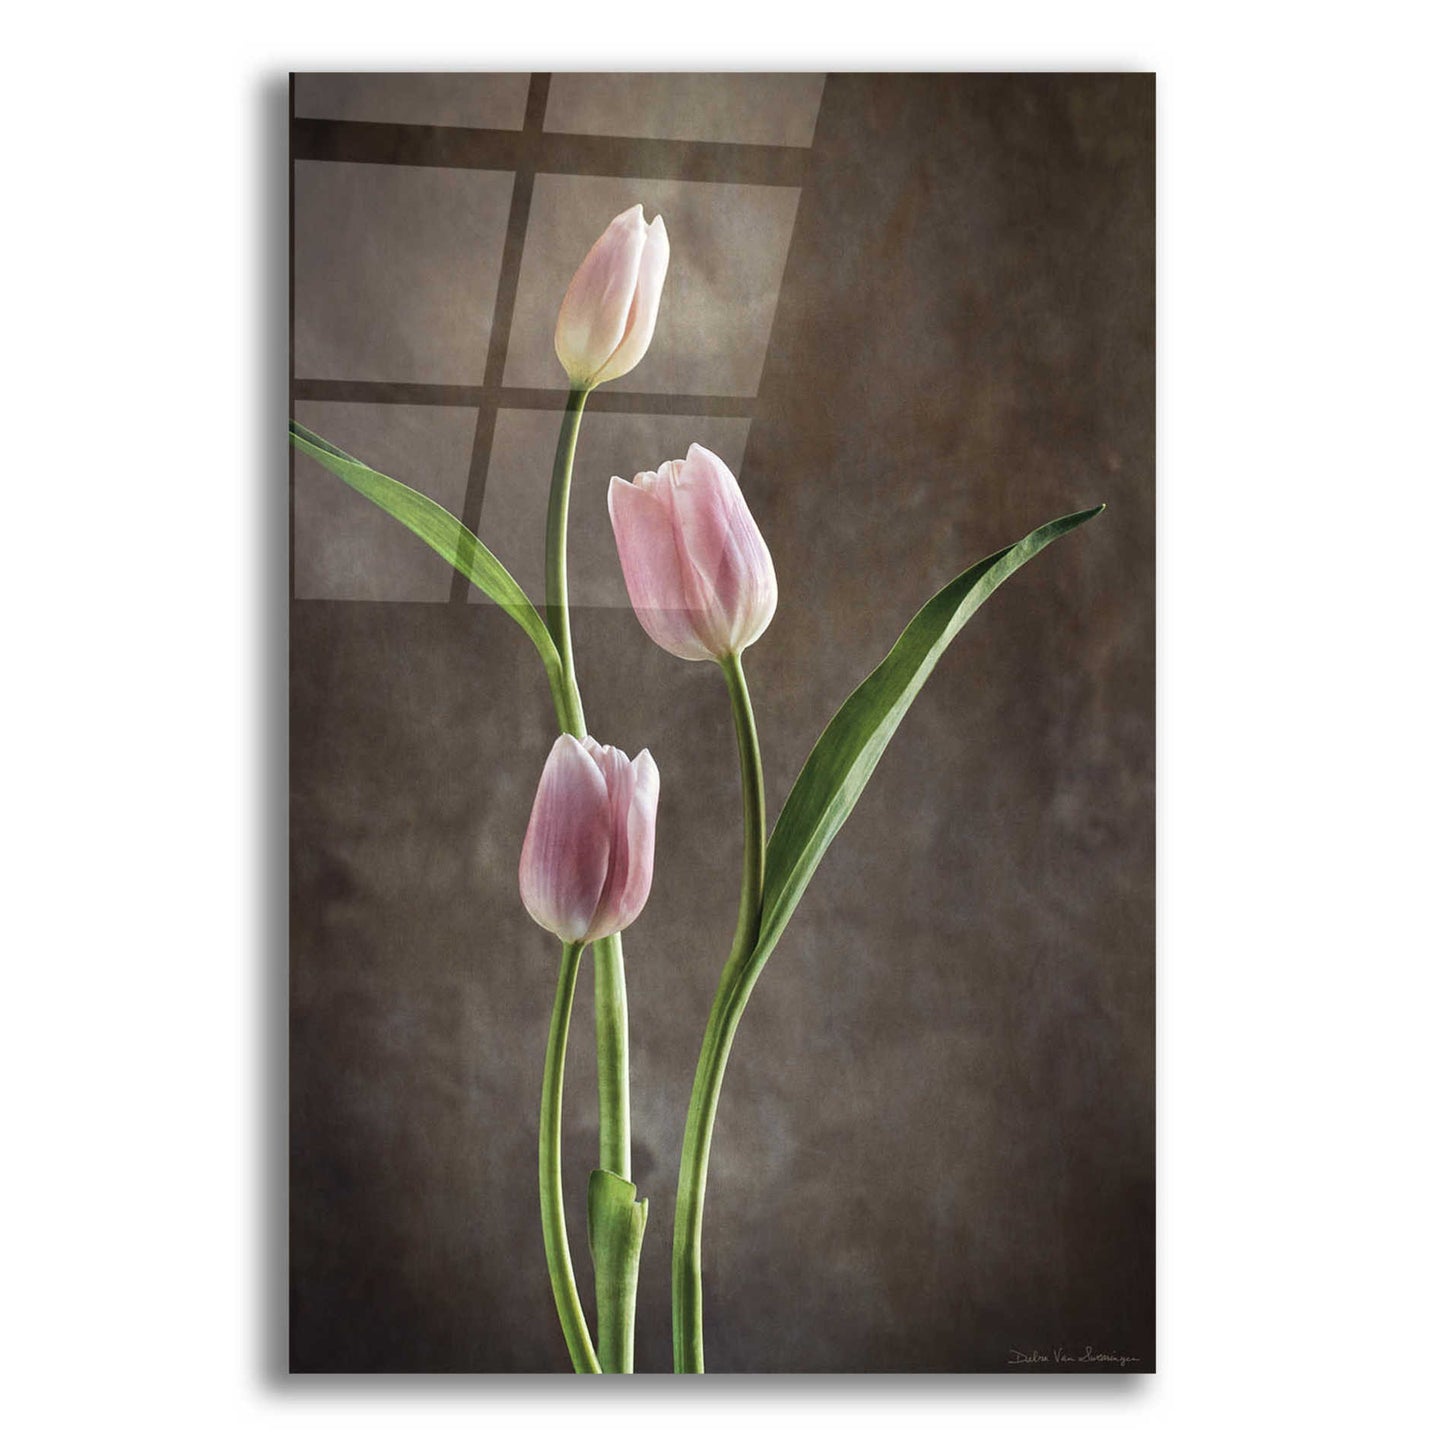 Epic Art 'Spring Tulips VIII' by Debra Van Swearingen, Acrylic Glass Wall Art,16x24